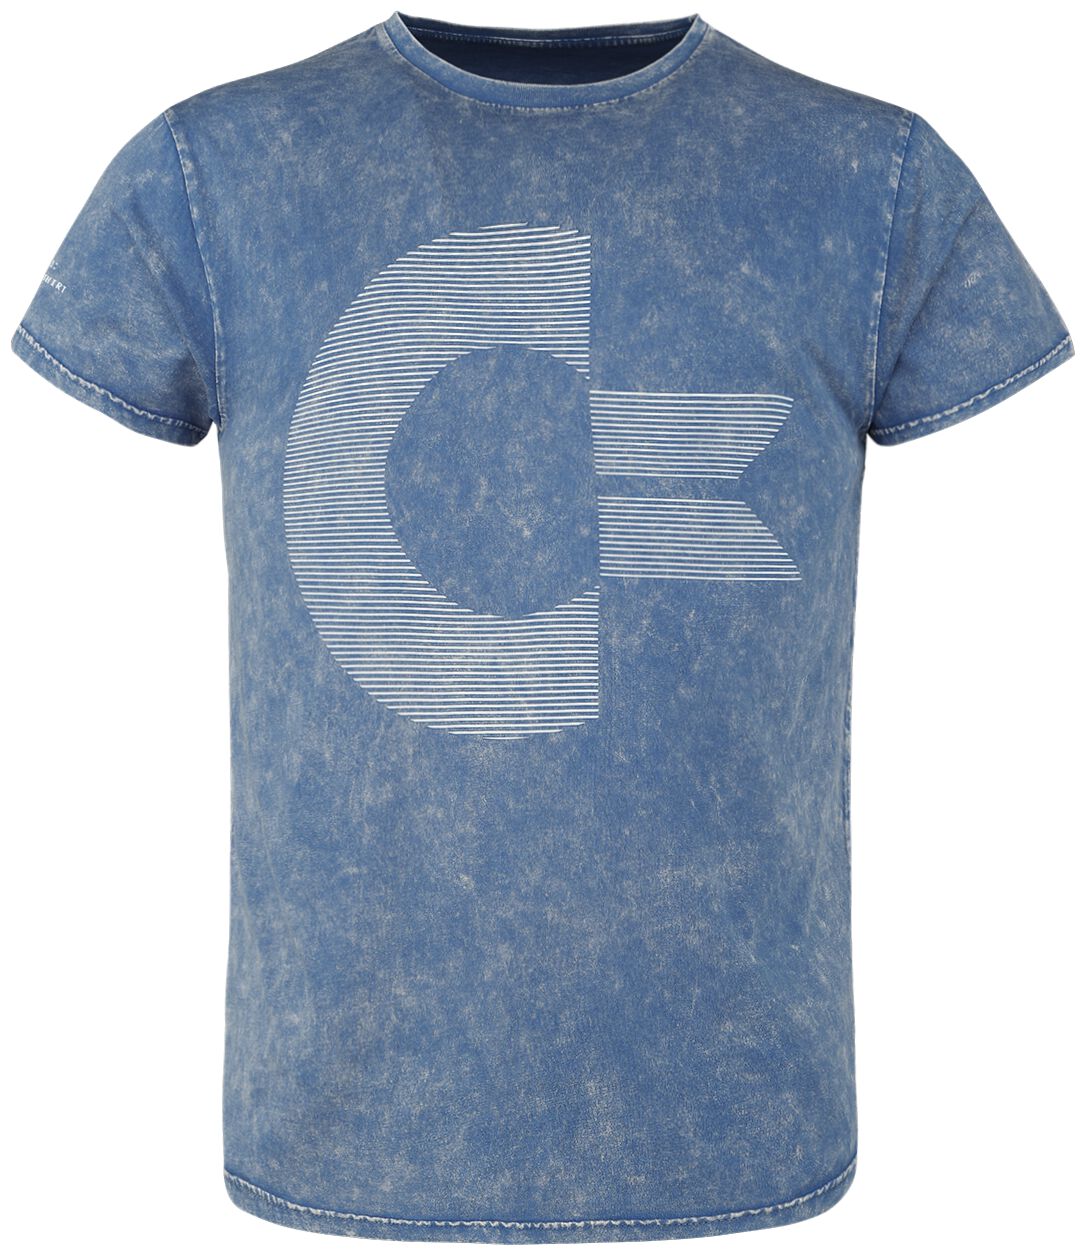 commodore 64 - gaming t-shirt - c64 - logo - m bis xxl - fÃ¼r mÃ¤nner - grÃ¶ÃŸe m - - emp exklusives merchandise! blau